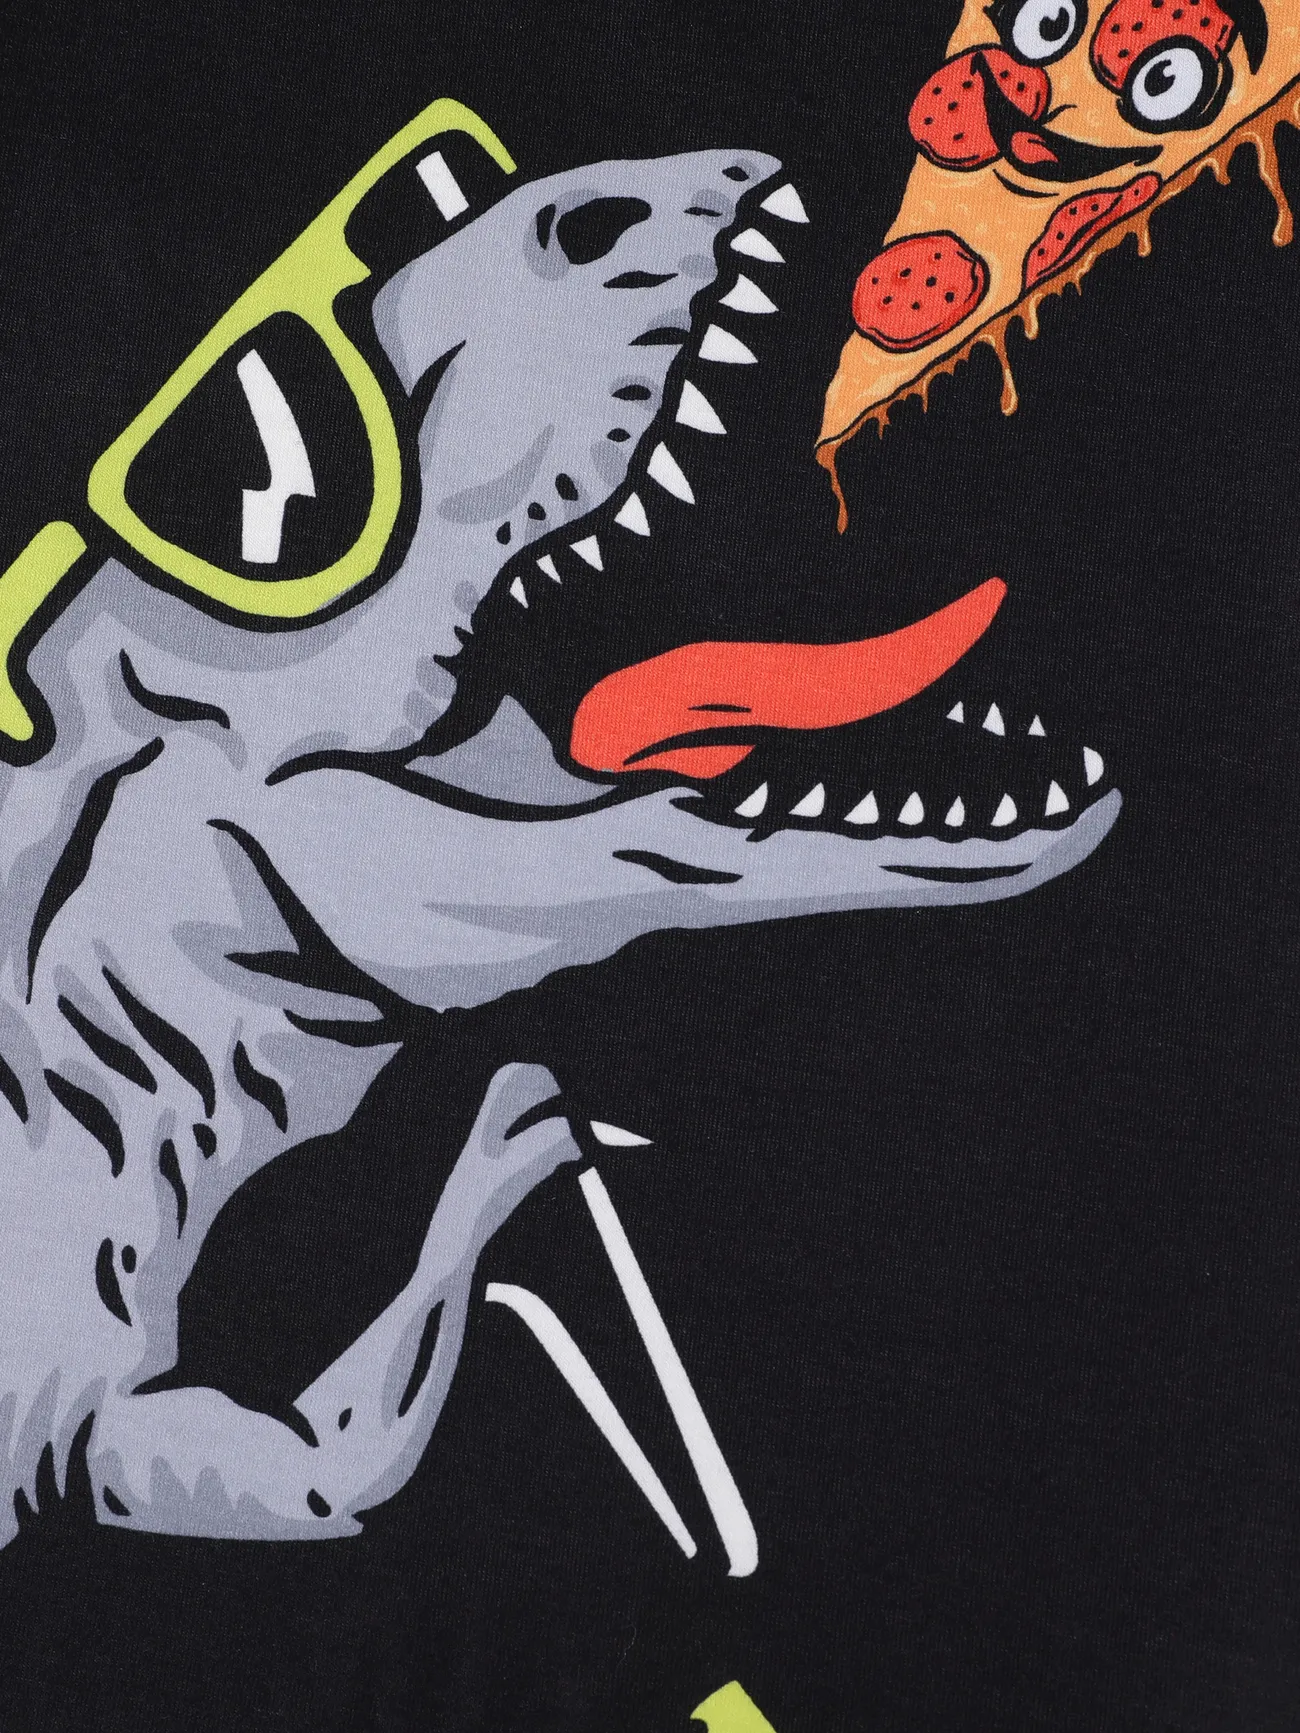 Kid Boy Animal Dinosaur Print Short-sleeve Tee Black big image 1